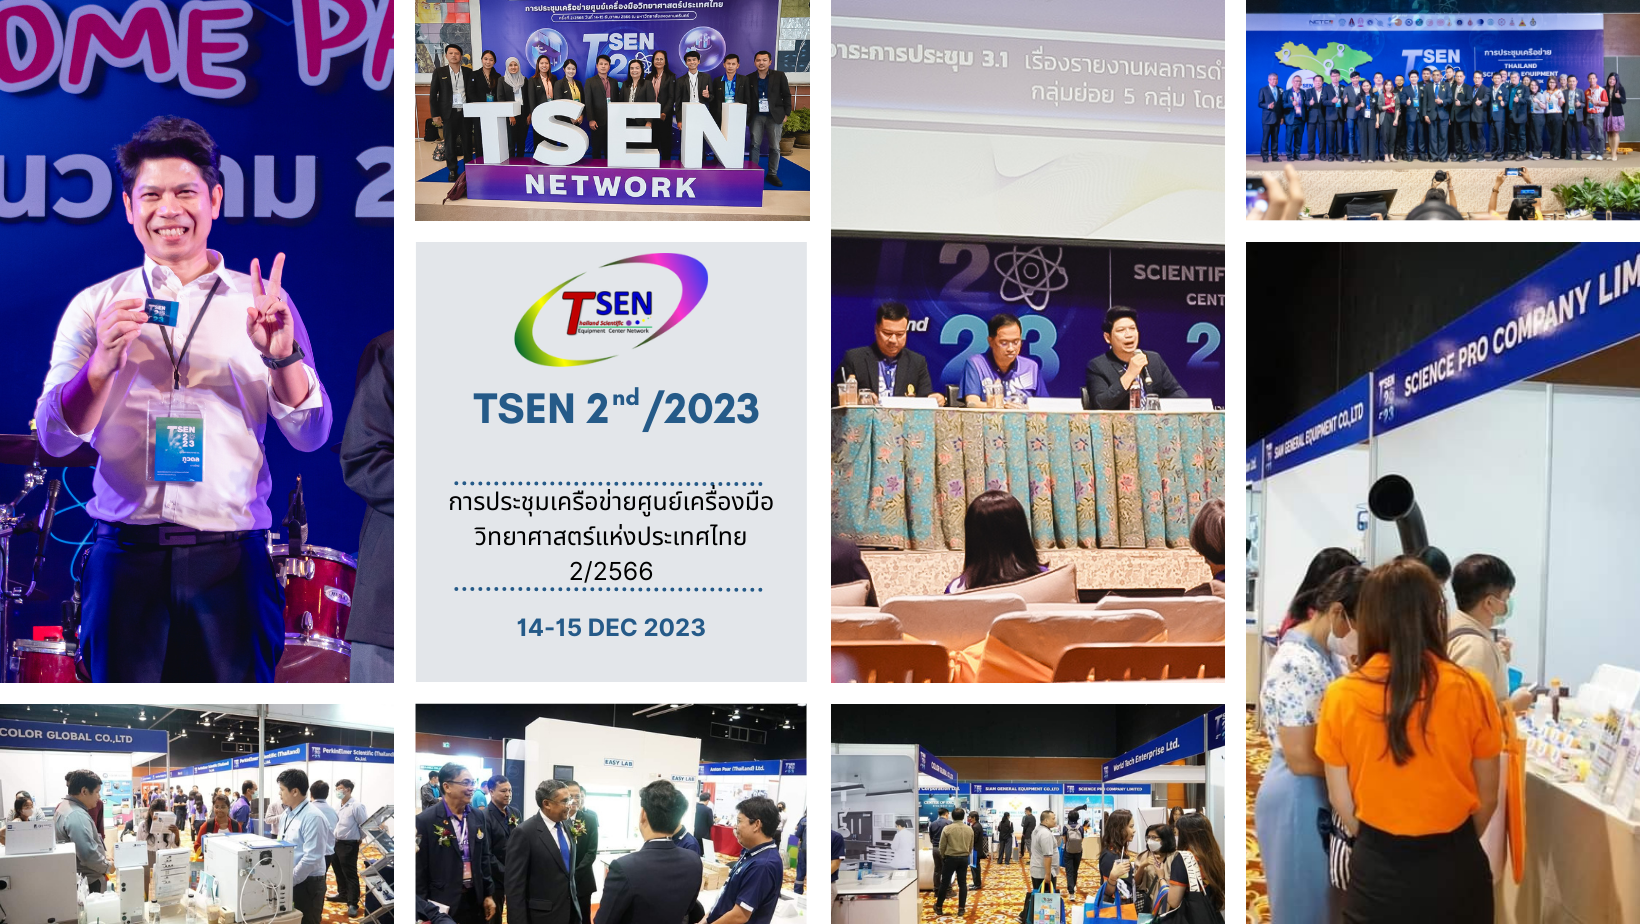 ศูนย์เครื่องมือวิทยาศาสตร์และเทคโนโลยี มหาวิทยาลัยวลัยลักษณ์ เข้าร่วมการประชุมเครือข่ายศูนย์เครื่องมือวิทยาศาสตร์ประเทศไทย (TSEN) ครั้งที่ 2/2566